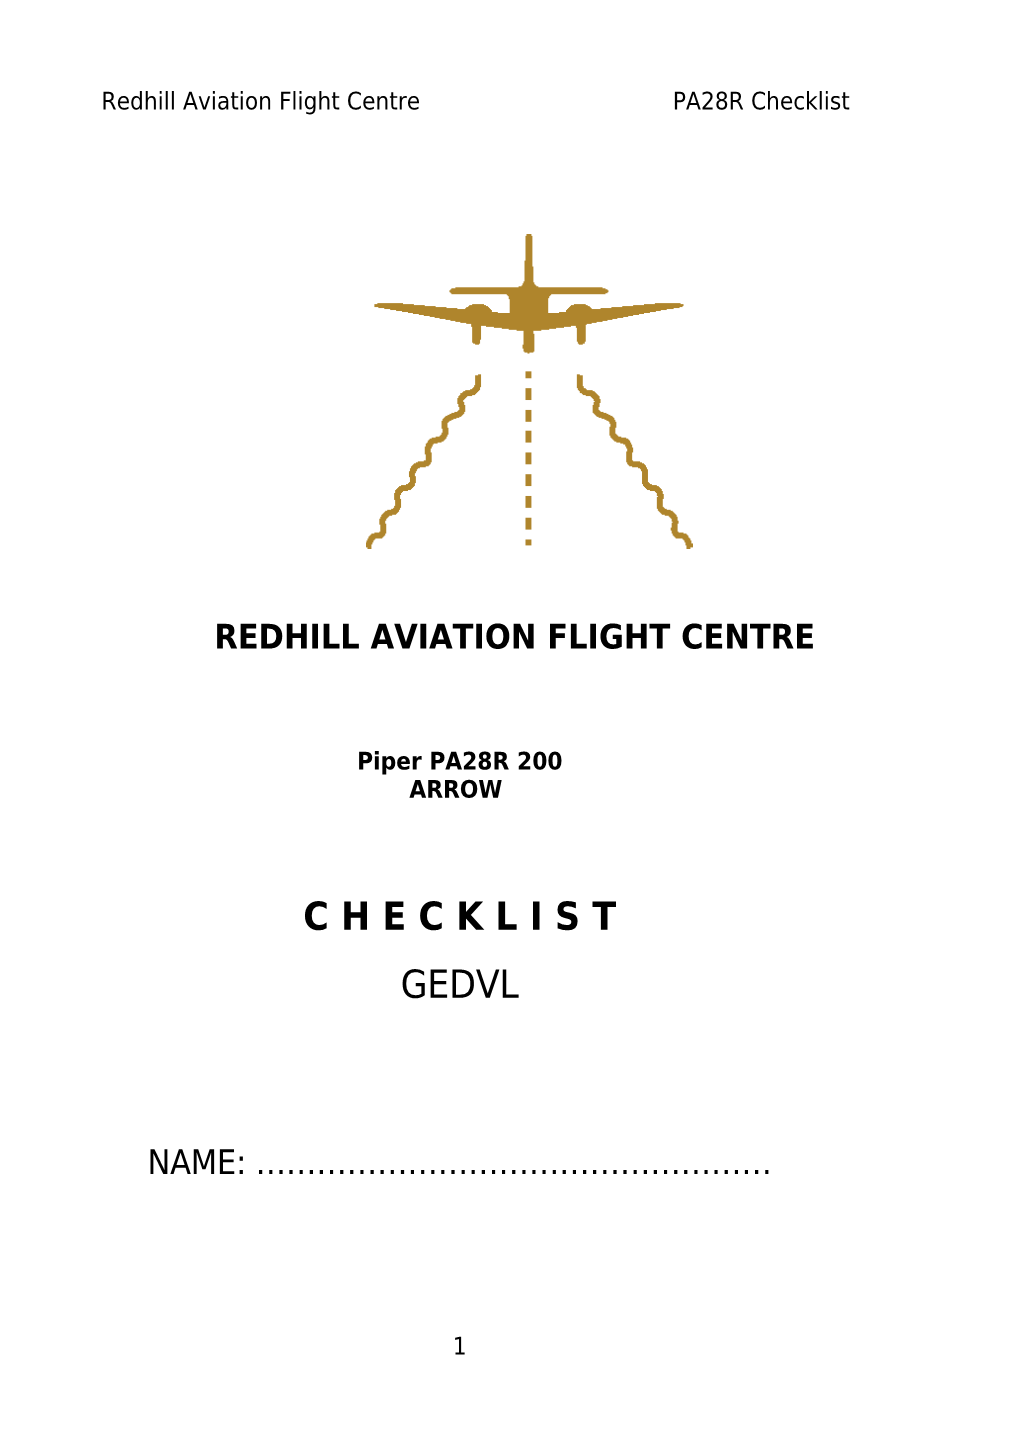 Pre-Flight Checklist